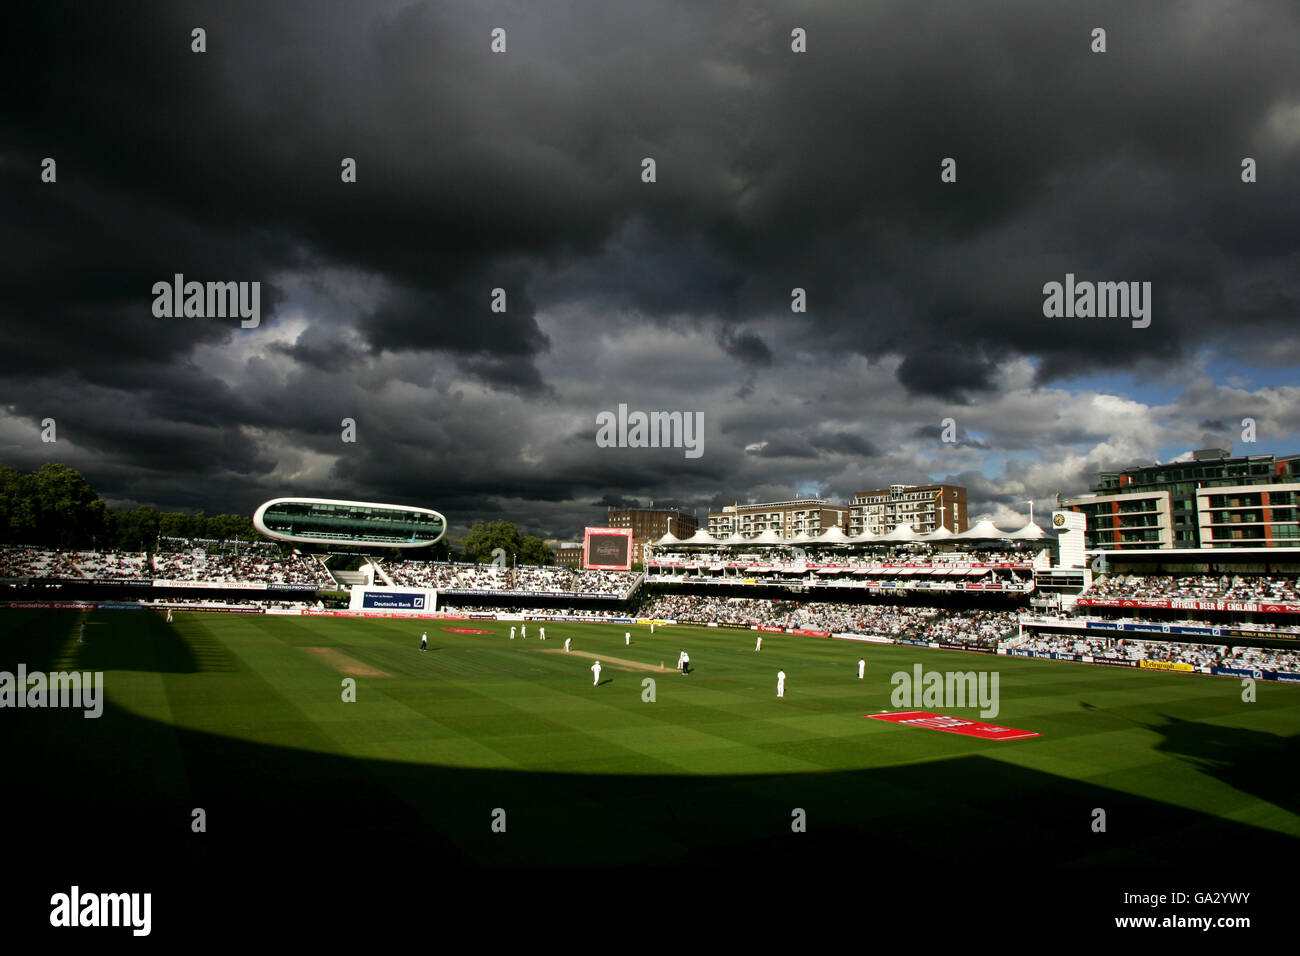 Cricket - npower Premier test - Angleterre / Inde - deuxième jour - Lord's.Des nuages sombres survolez Lords vers la fin de la journée pendant le match entre l'Angleterre et l'Inde. Banque D'Images